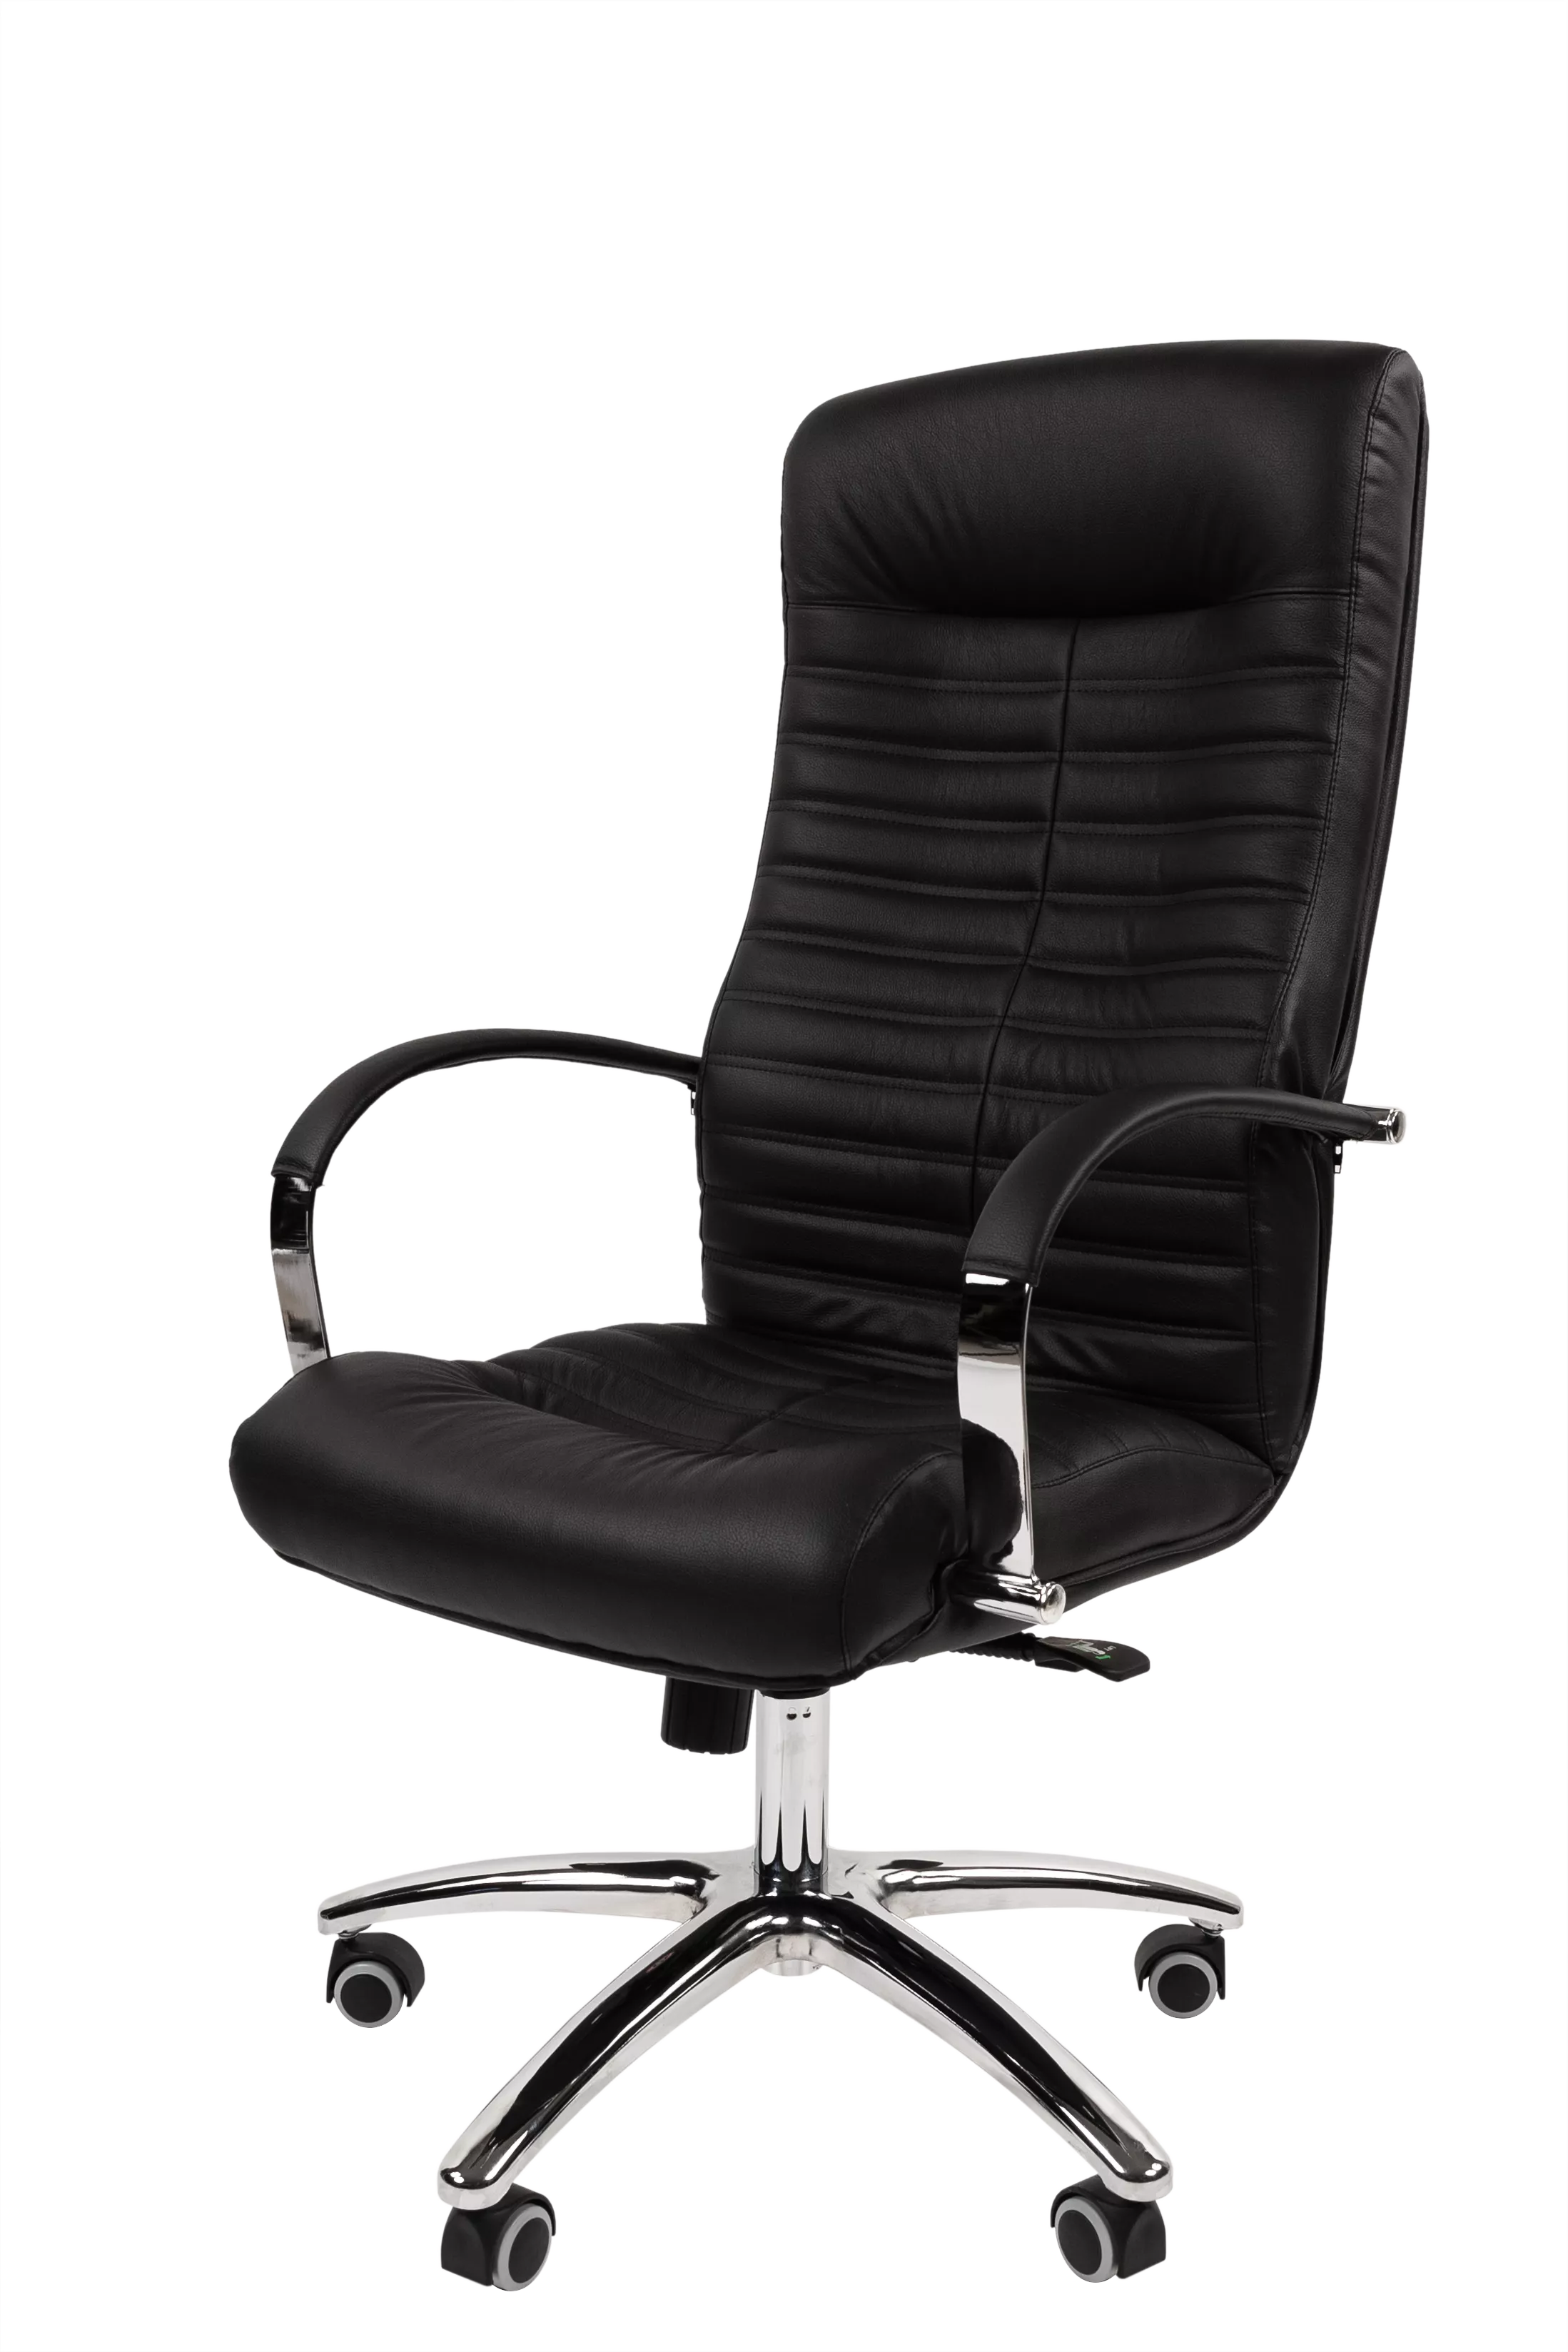 Кресло для руководителя усиленное (до 150 кг) CHAIRMAN 480 N кожа черный